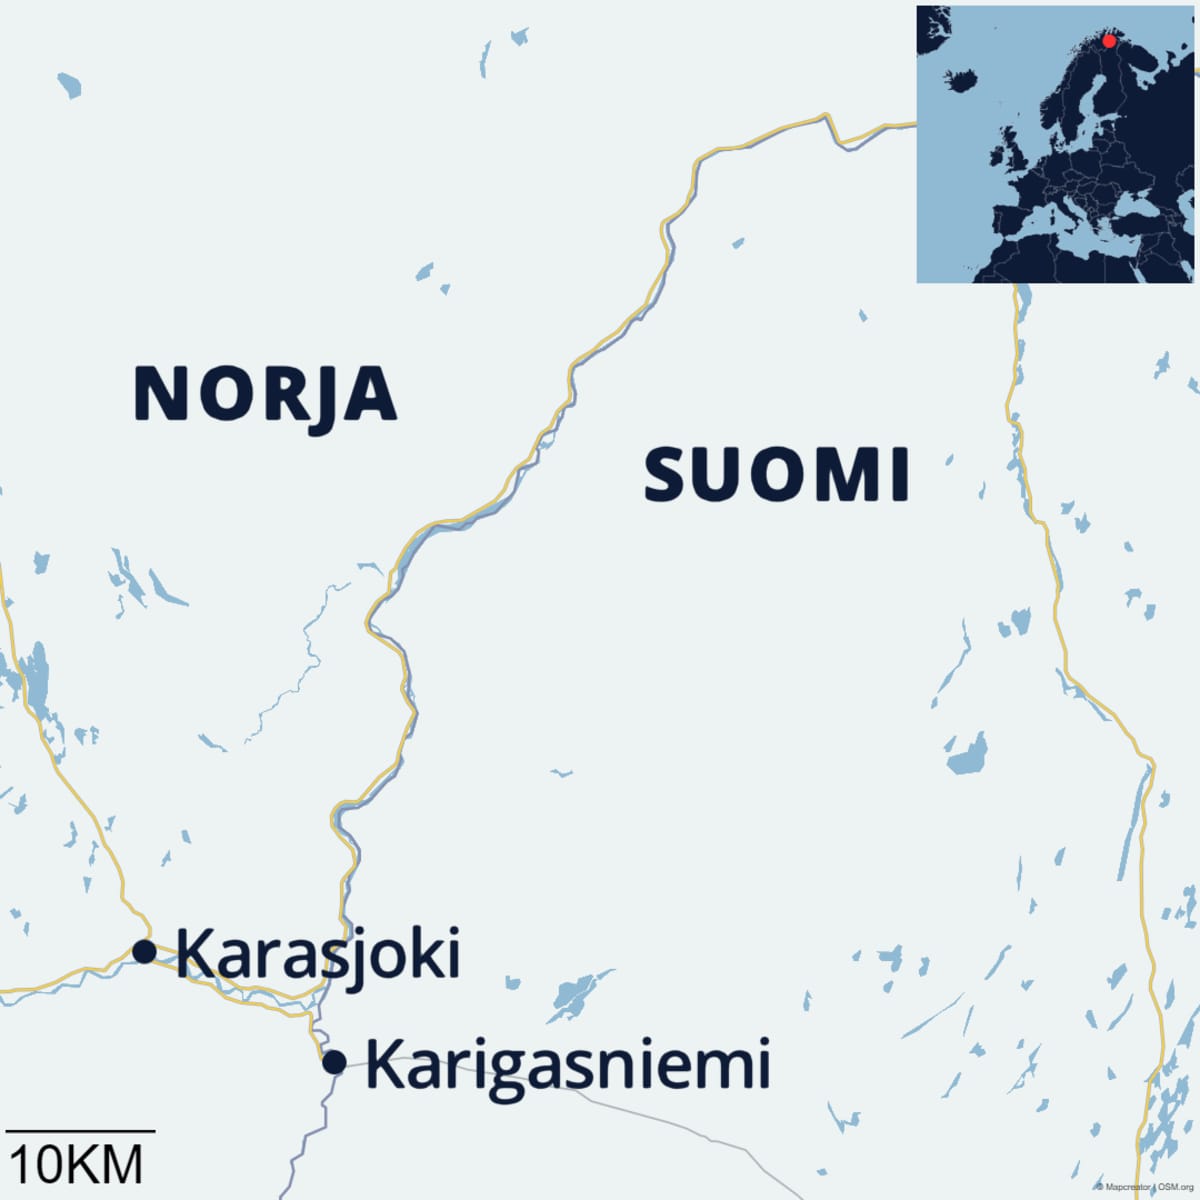 Norjan Karasjoki ja Suomen Karigasniemi sijaitsevat hyvin lähellä toisiaan.